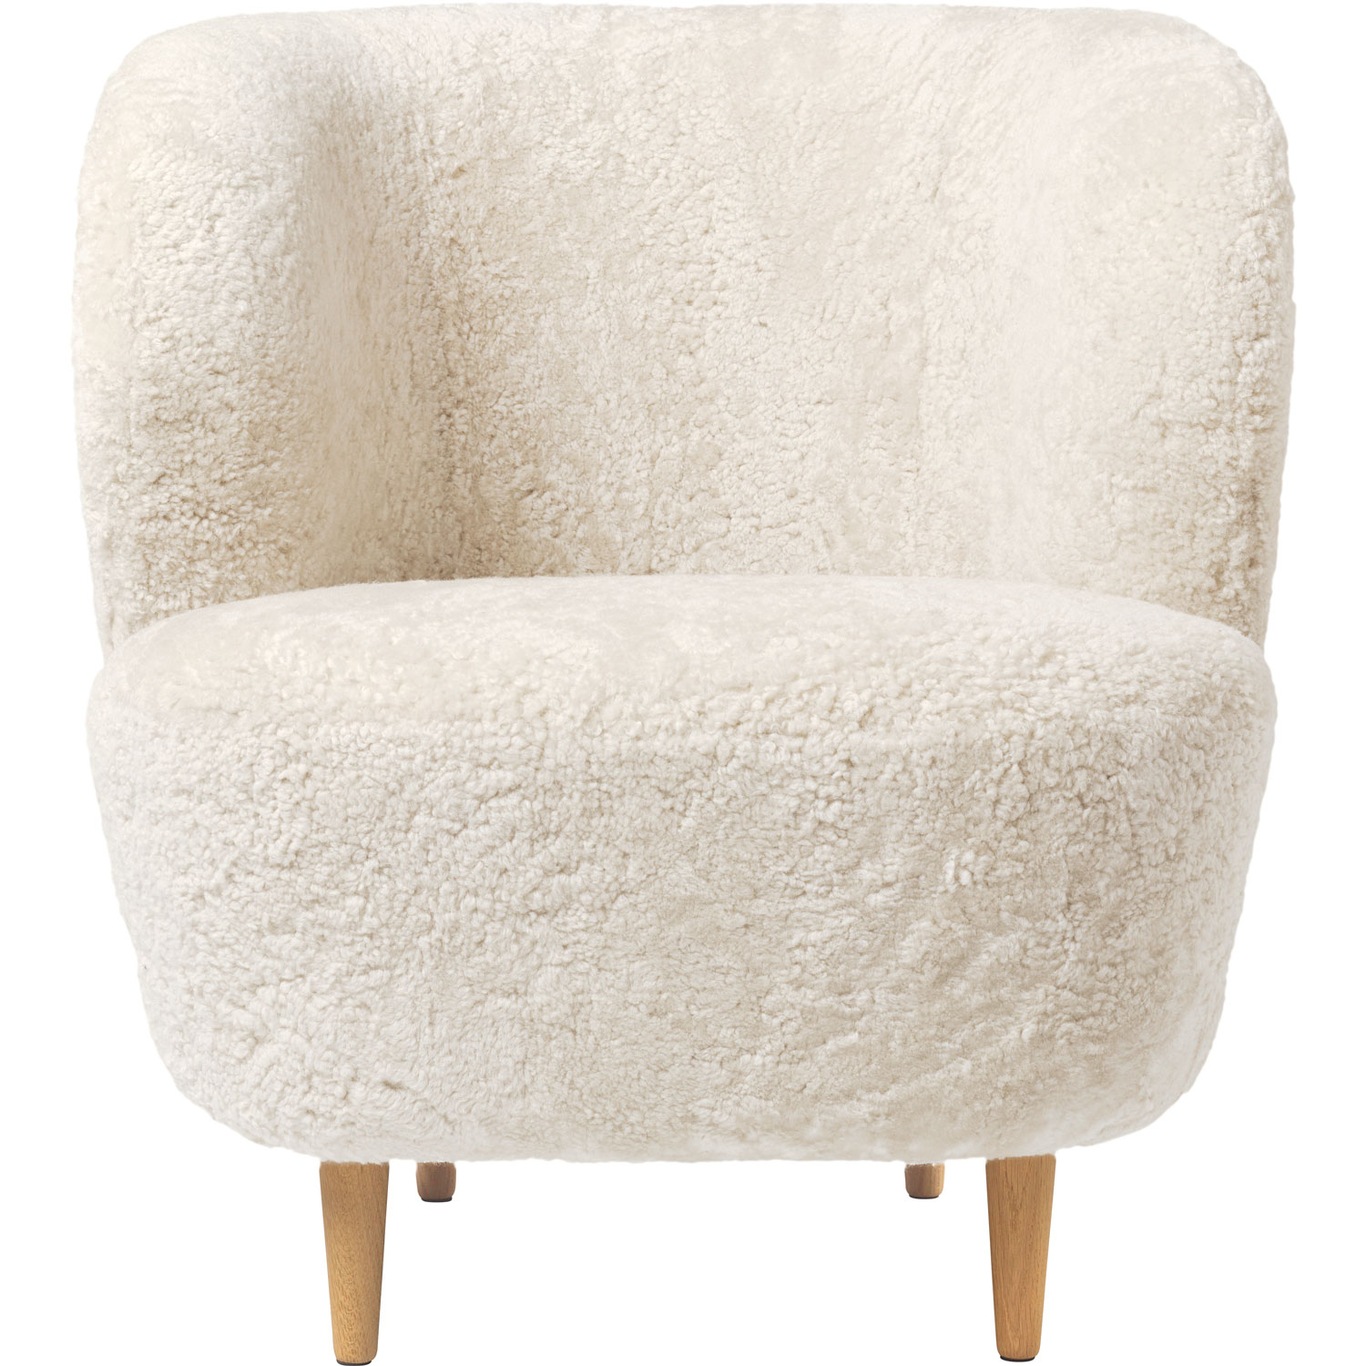 Stay Lounge Chair Sheepskin Offwhite/Oak